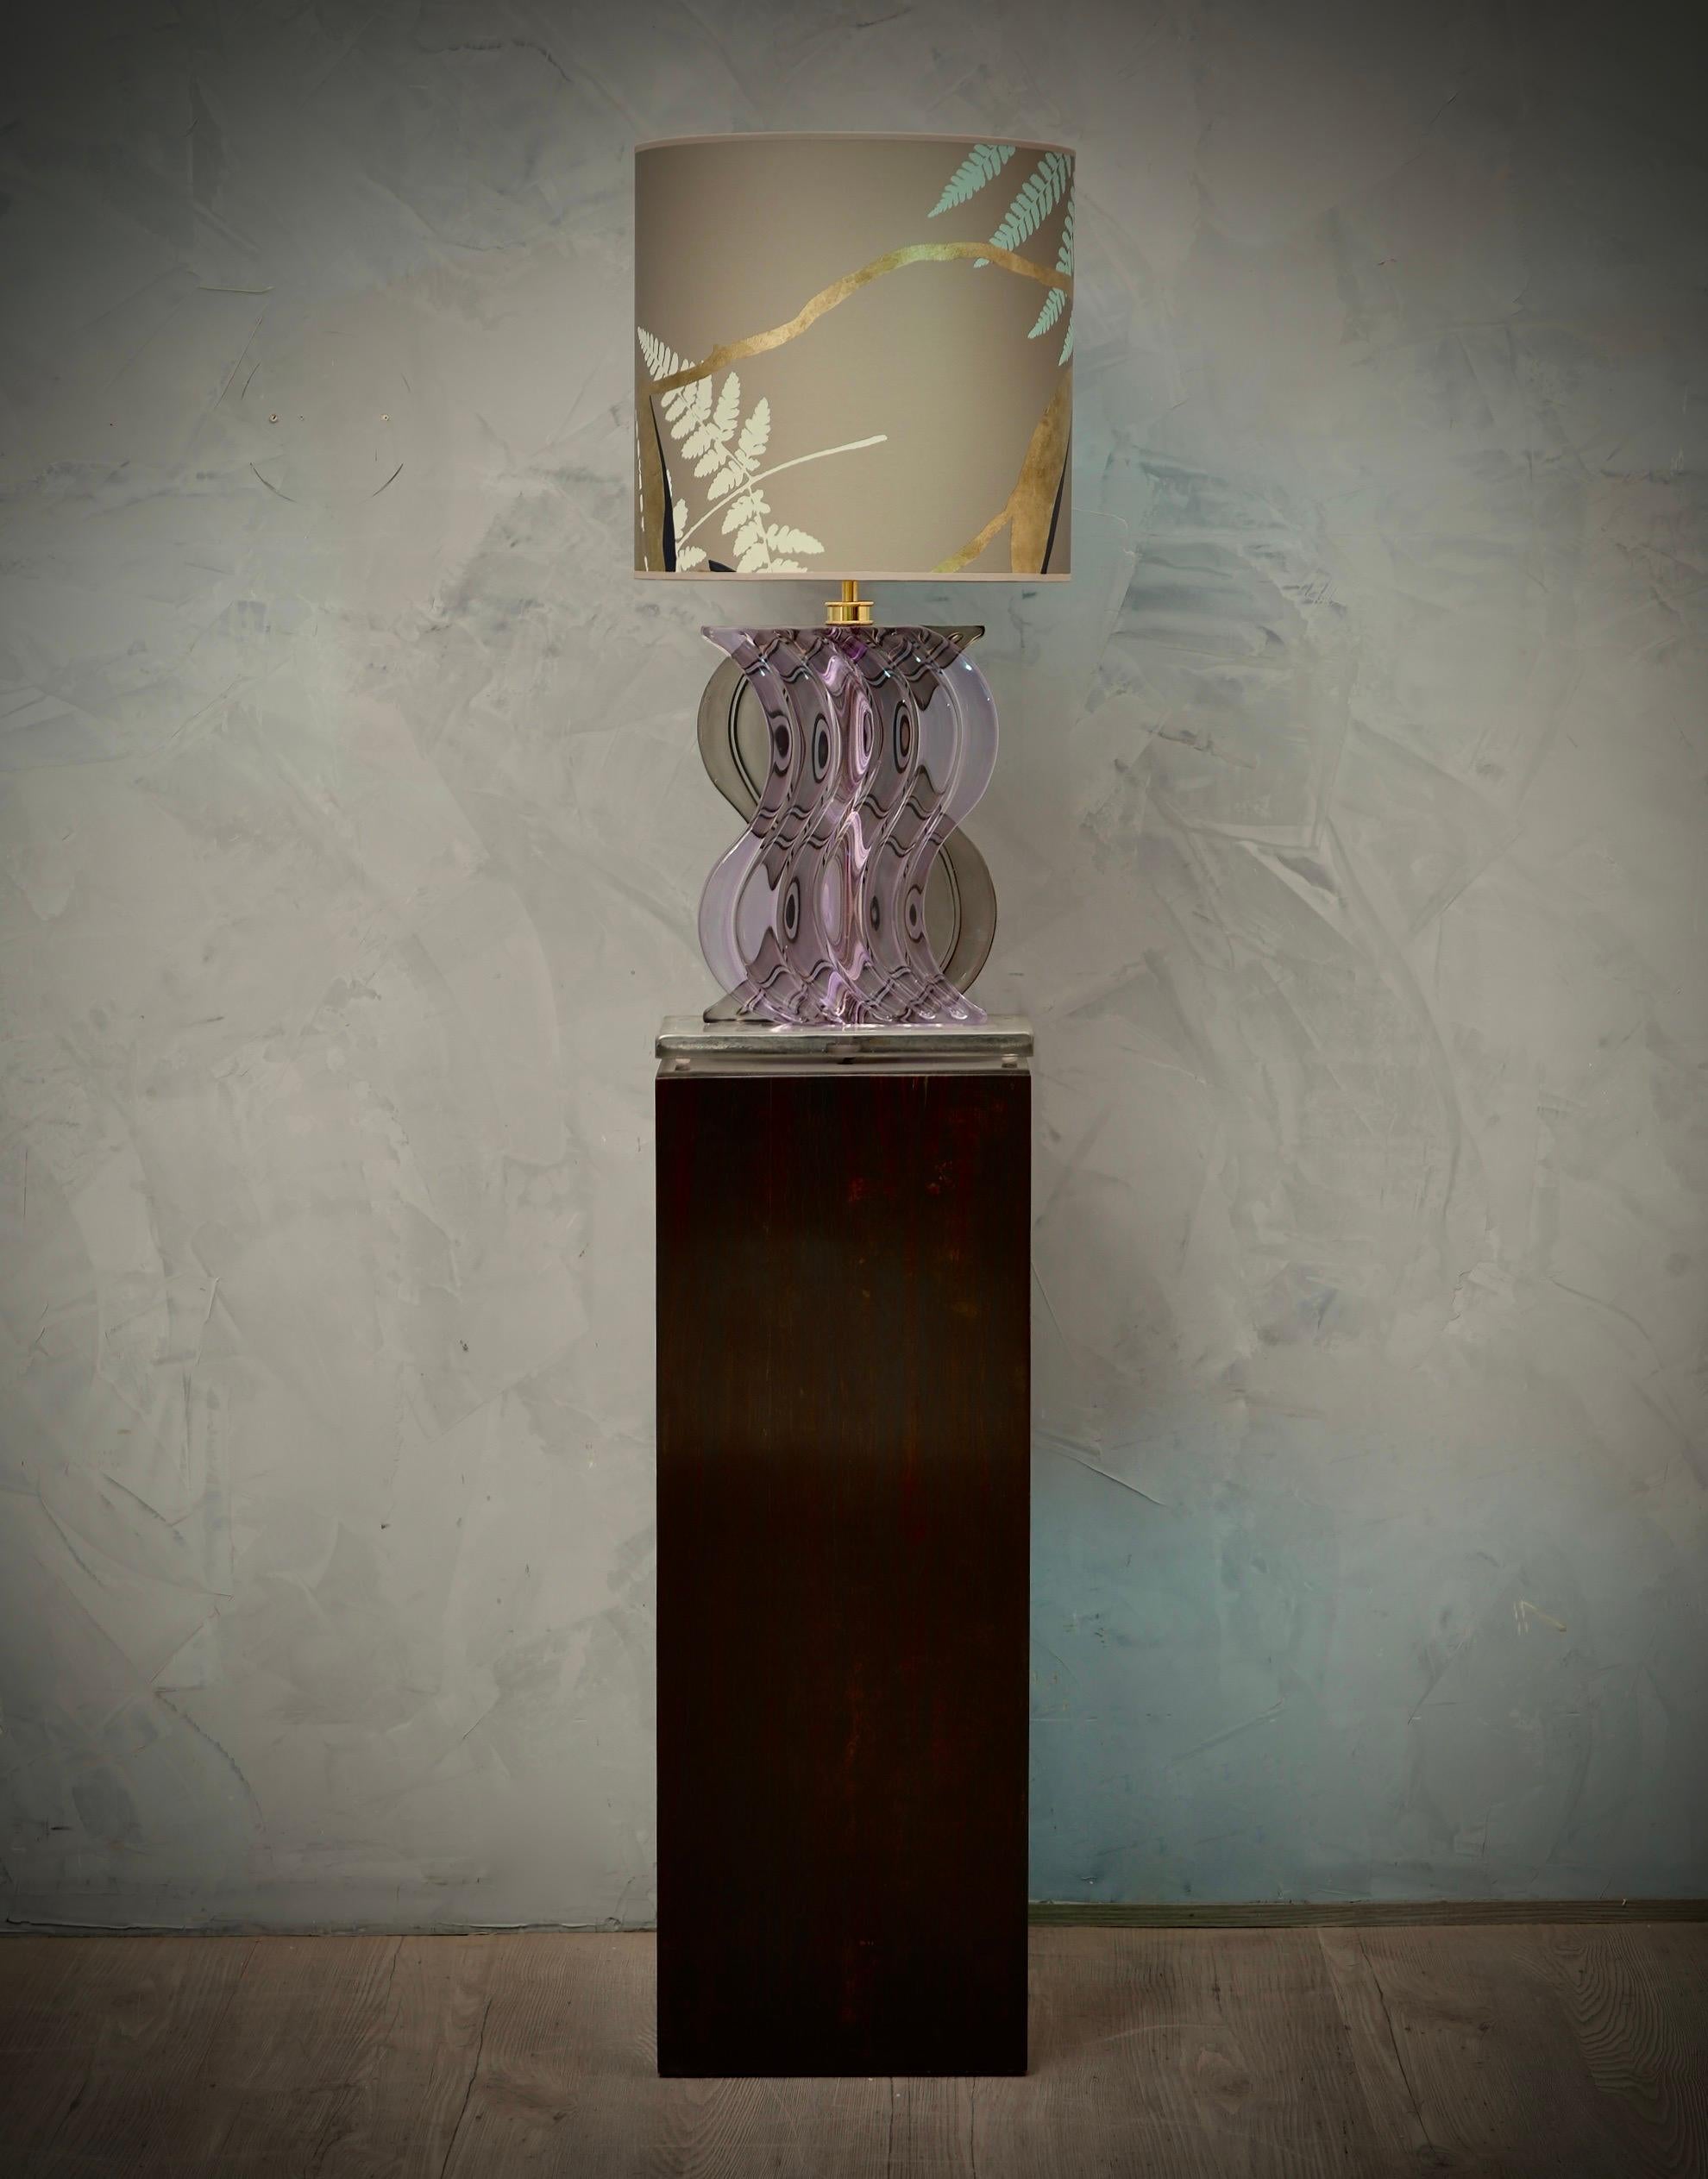 Superbes lampes de table composées d'un verre de Murano immergé de couleur pervenche et fumée. Un design très spécial et unique. Les fours Murano créent un design intemporel incontestable, à la fois simple et élégant.

La lampe est composée d'une